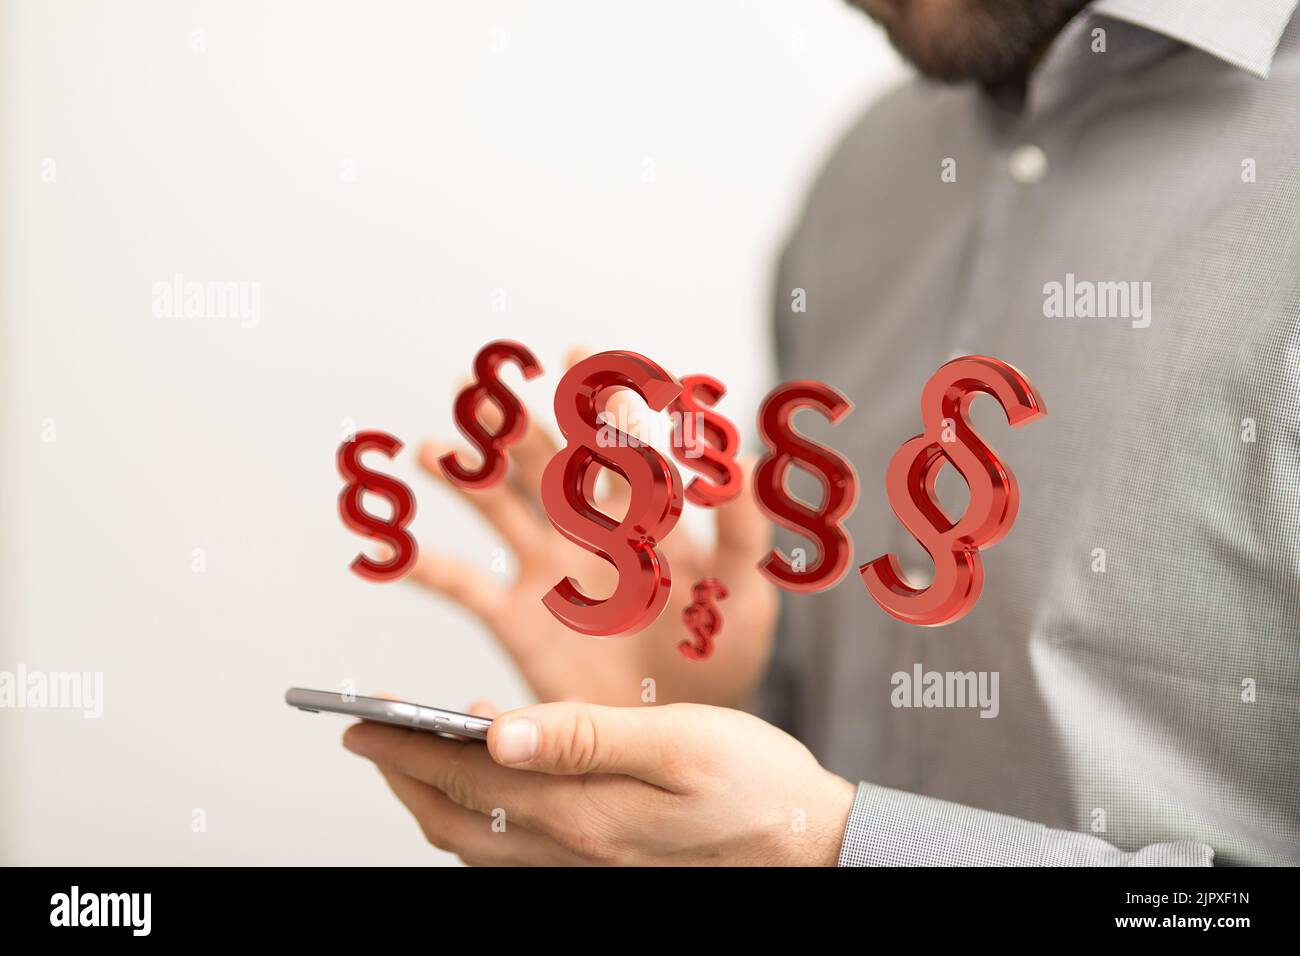 3D icônes de paragraphe affichées flottant au-dessus de l'écran d'un smartphone Banque D'Images